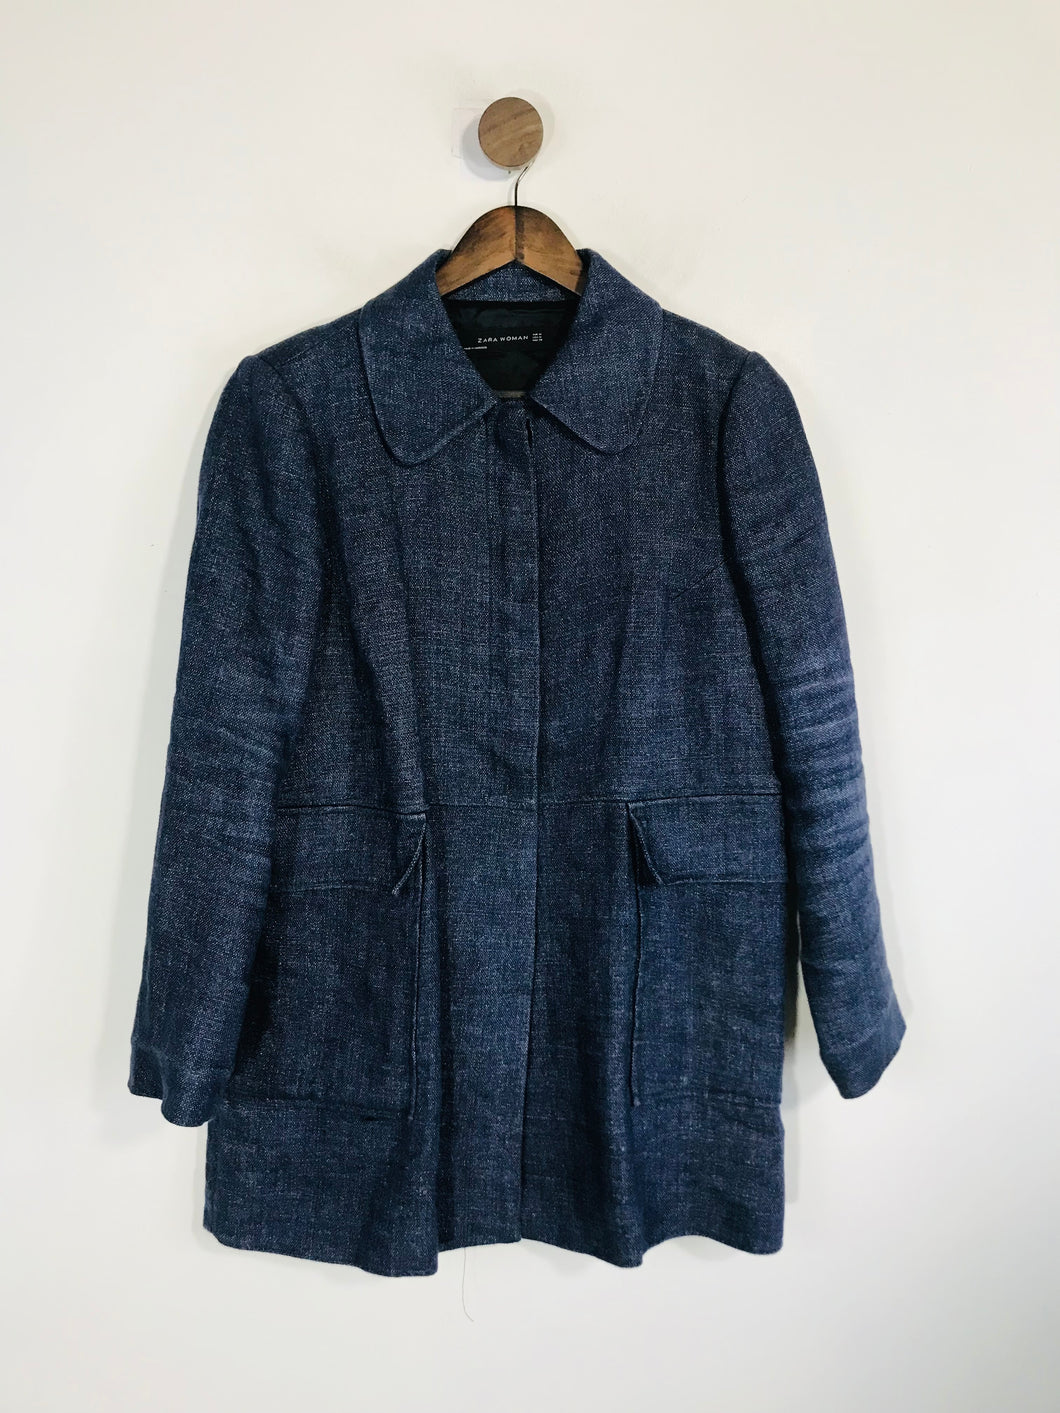 Zara Women's Linen Overcoat Coat | M UK10-12 | Blue